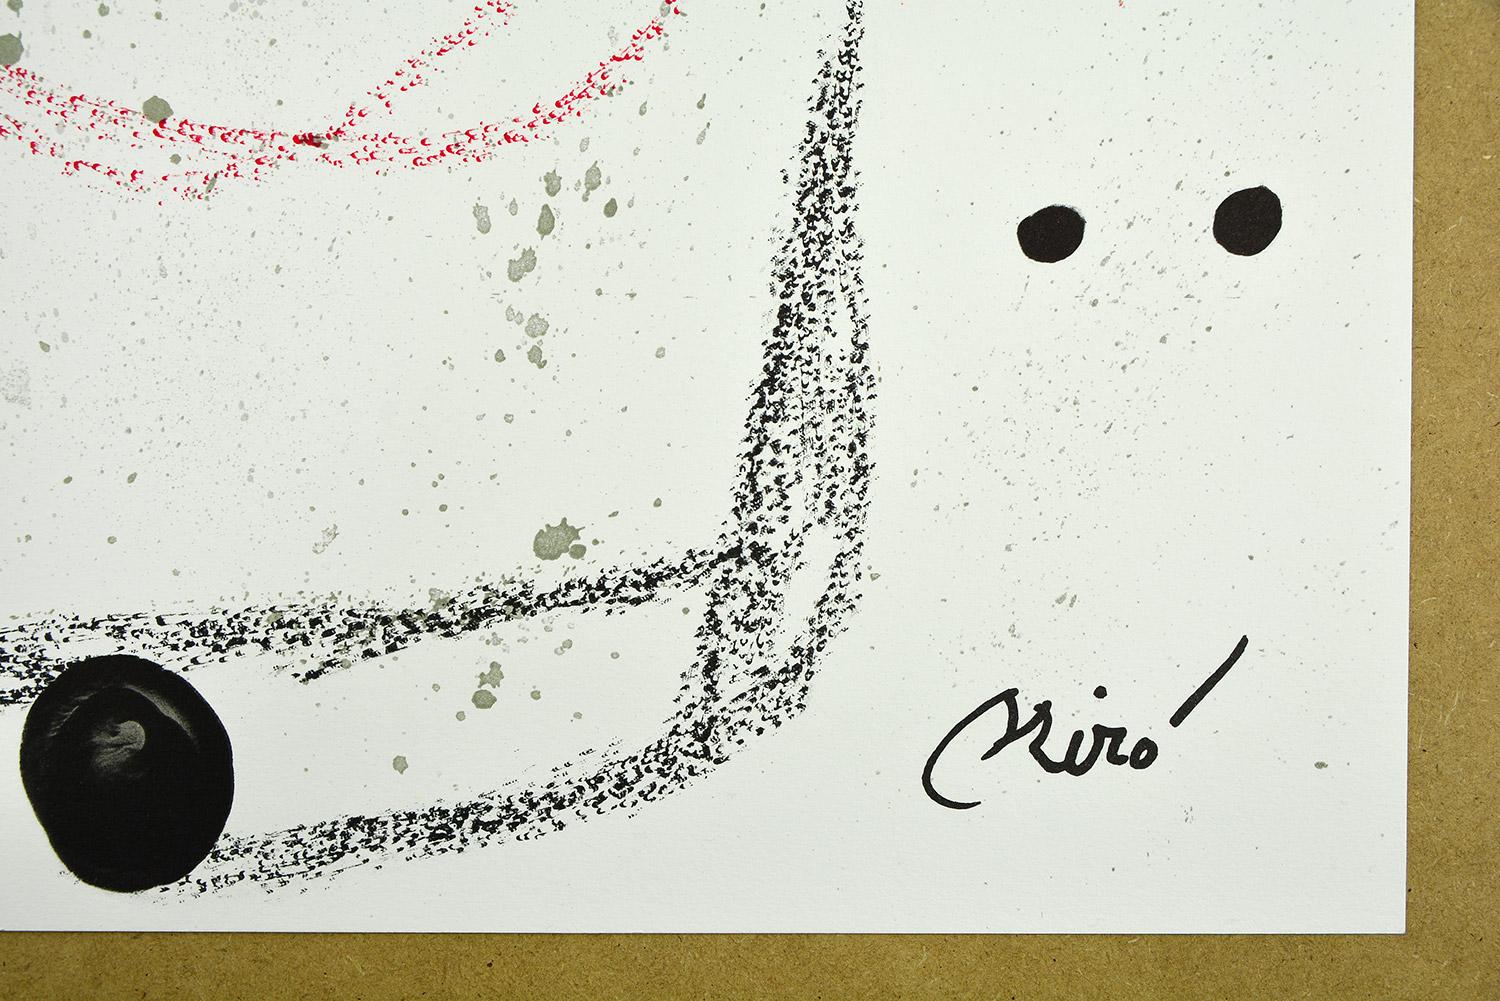 Maravillas con variaciones acrósticas en el jardín de Miró IX
Date of creation: 1975
Medium: Lithograph
Media: Gvarro paper
Edition: 1500
Size: 49,5 x 71 cm
Observations:
Lithograph on Gvarro paper plate signed. Edited by Polígrafa, Barcelona, in